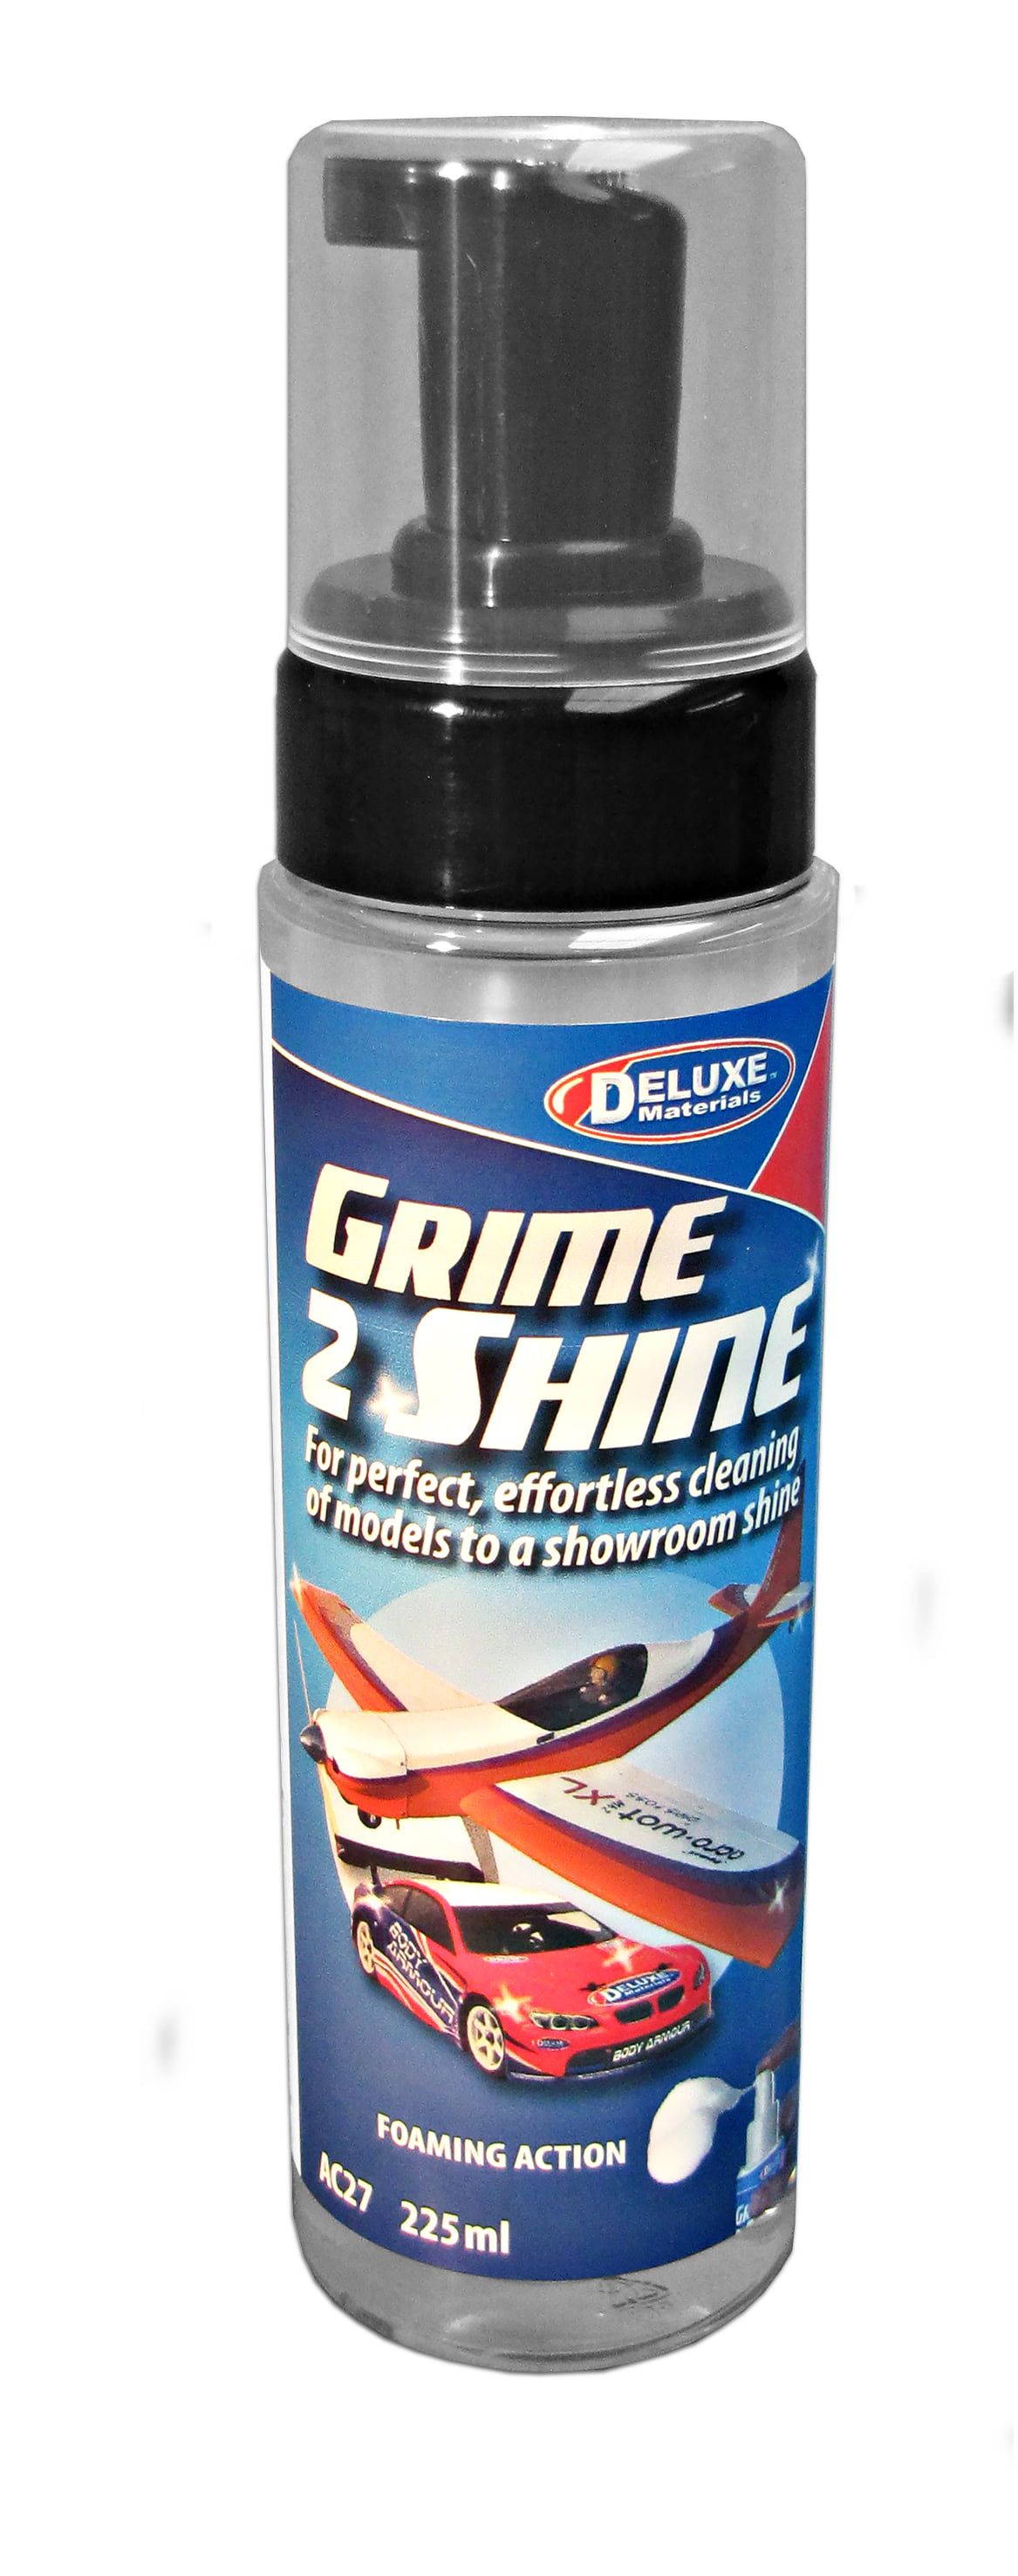 Grime 2 Shine Showroom Cleaning Foam 225ml